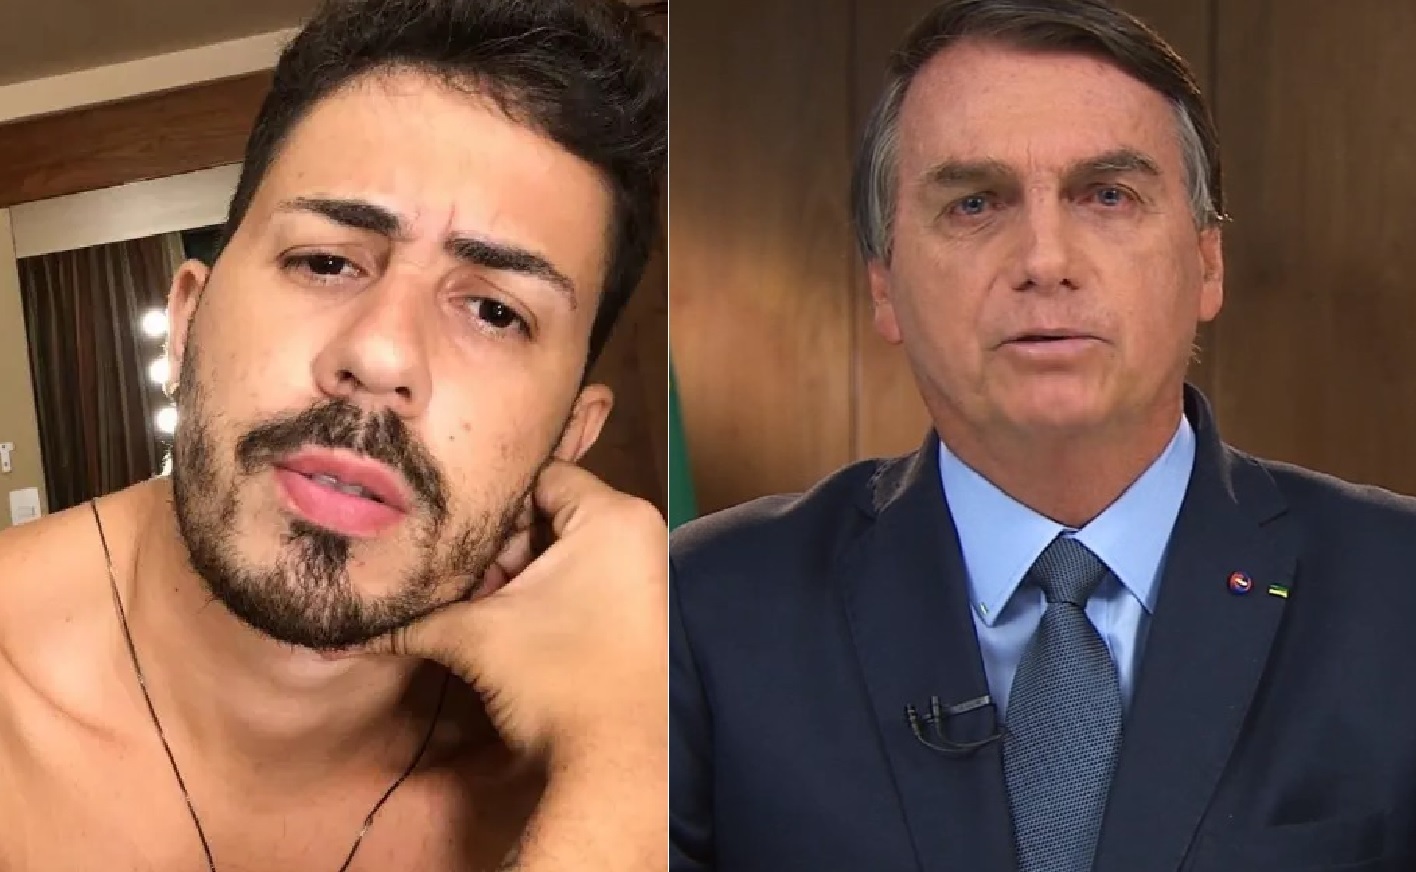 Carlinhos Maia rompe com Bolsonaro e pede que ele deixe a Presidência